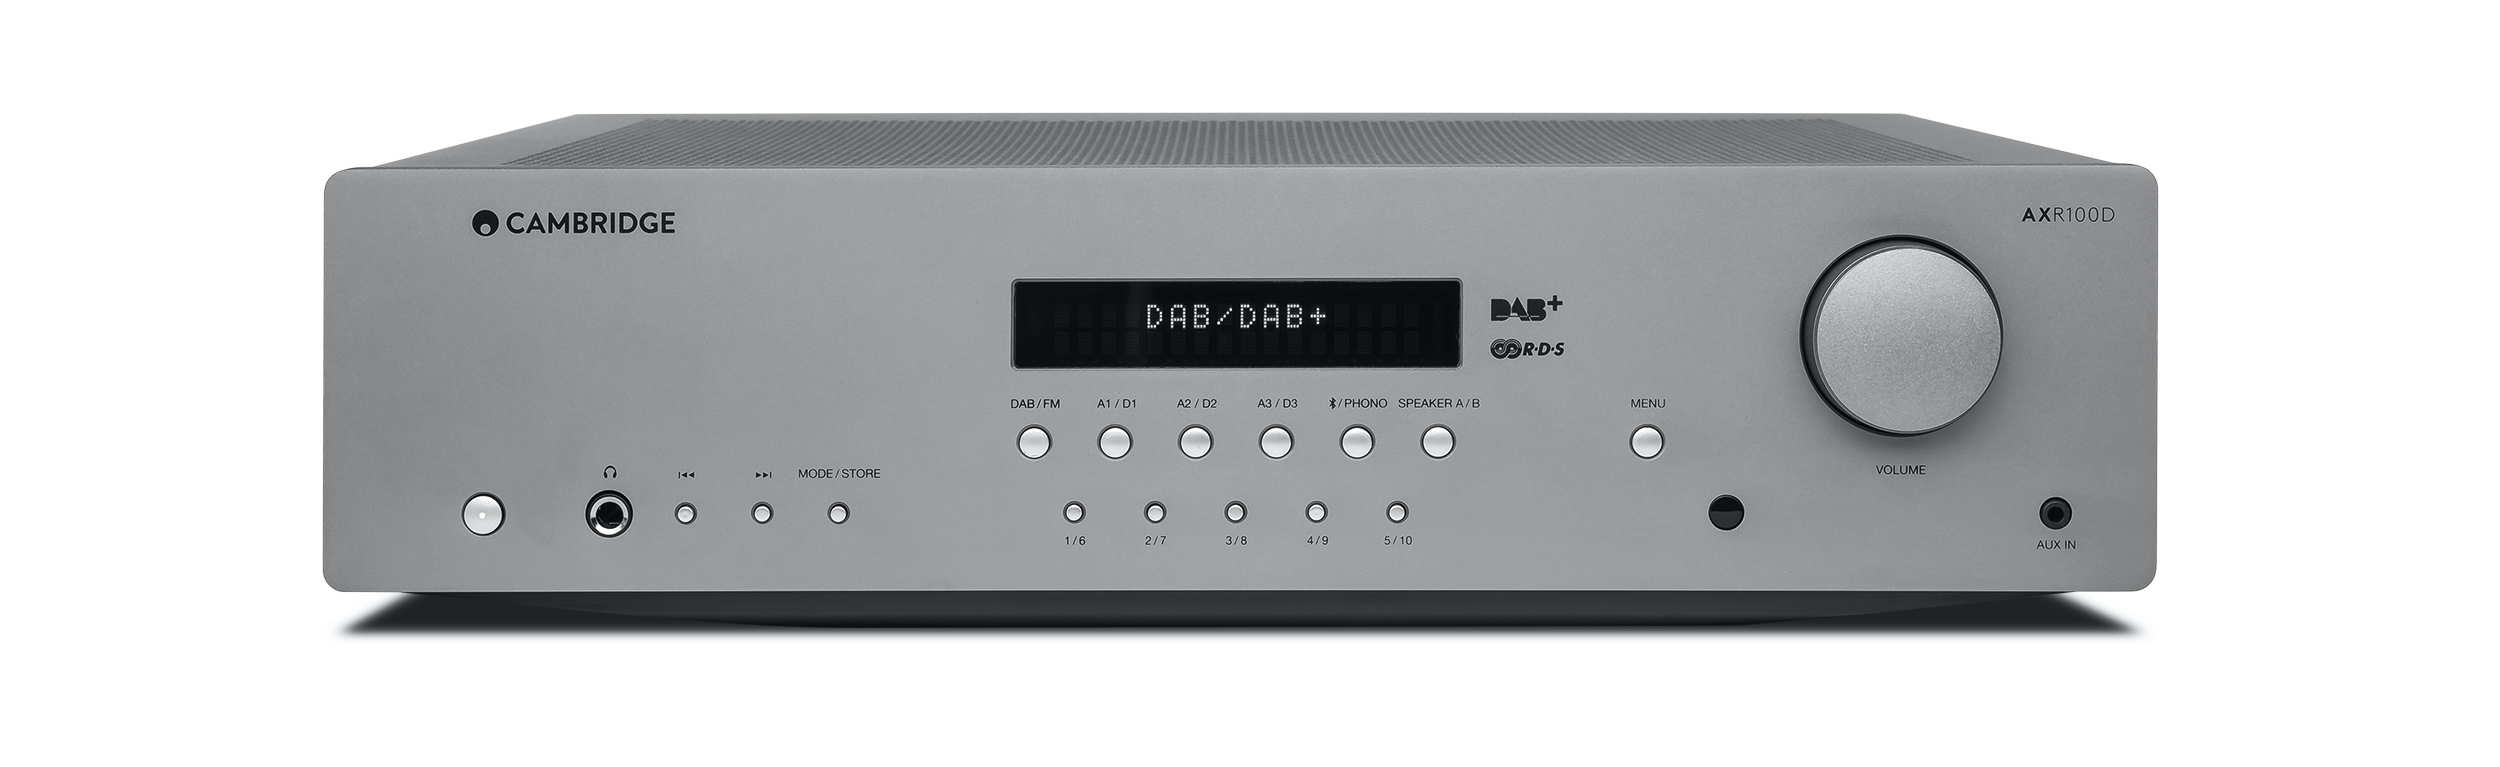 Review Audio receiver Betaalbare oplossing ruime mogelijkheden